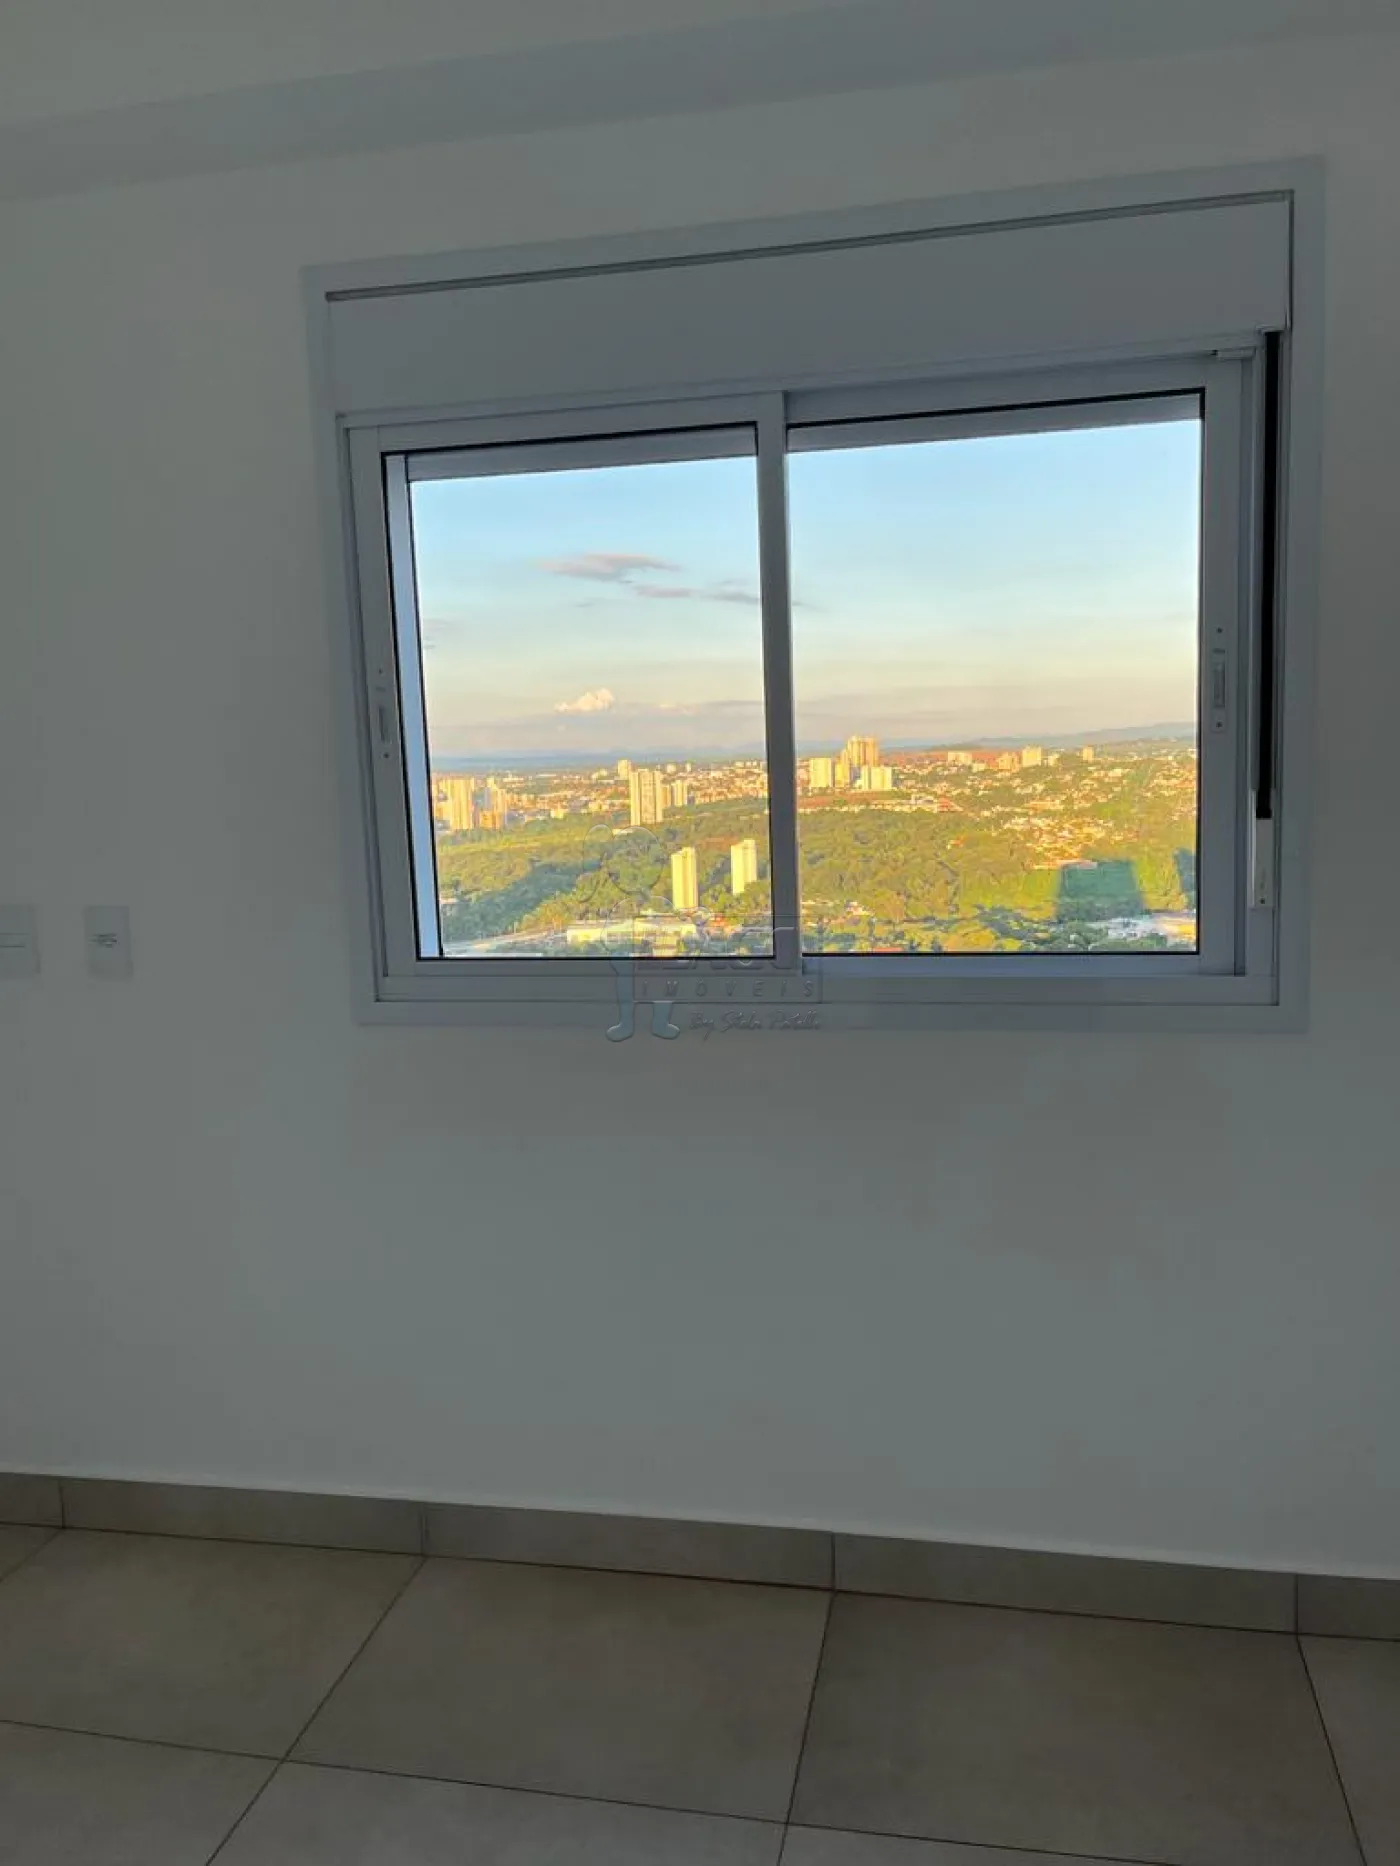 Comprar Apartamentos / Padrão em Ribeirão Preto R$ 700.000,00 - Foto 6